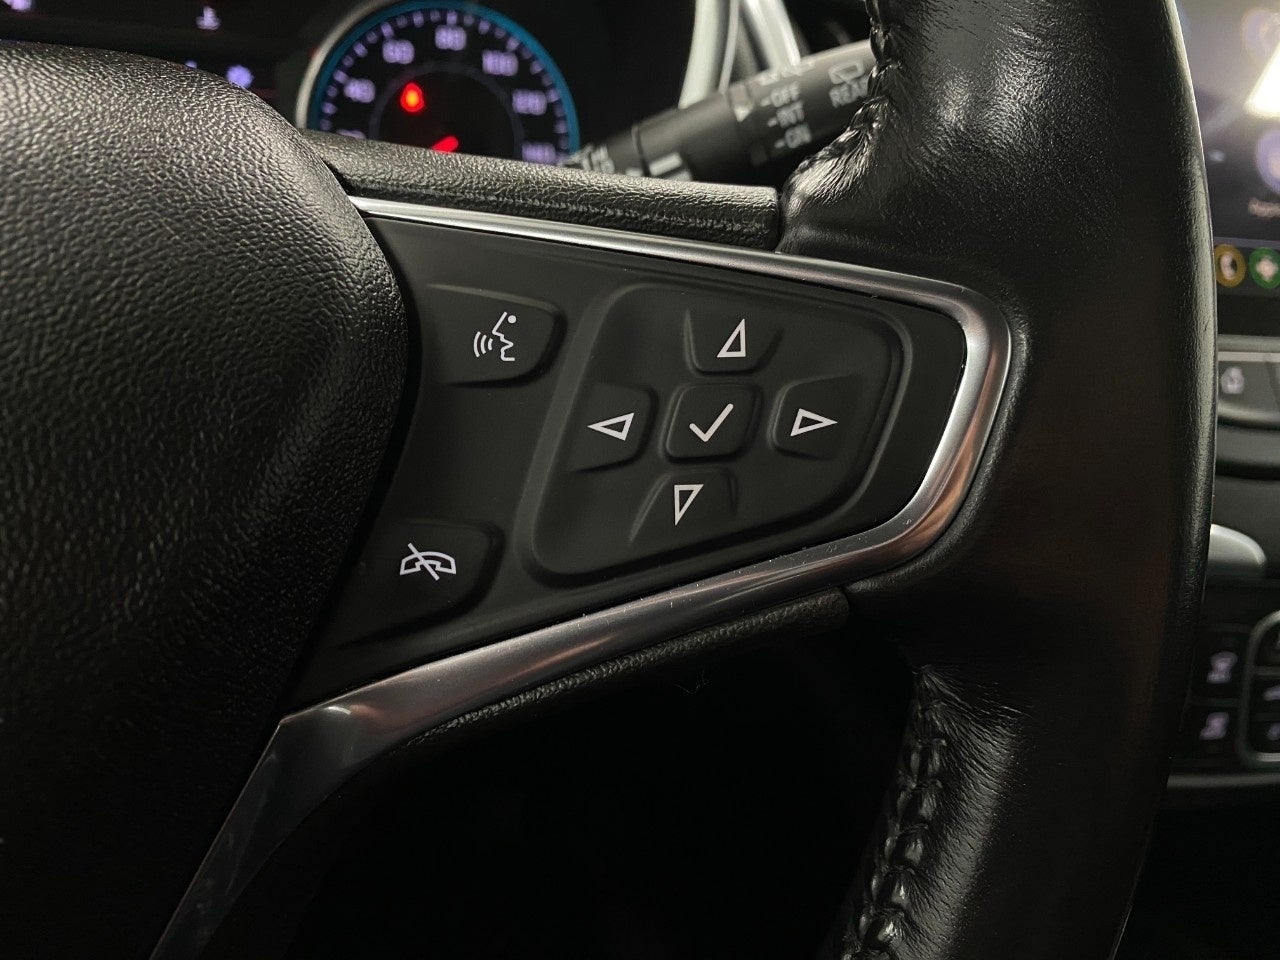 2019 Chevrolet Equinox FWD 4dr Premier w/1LZ